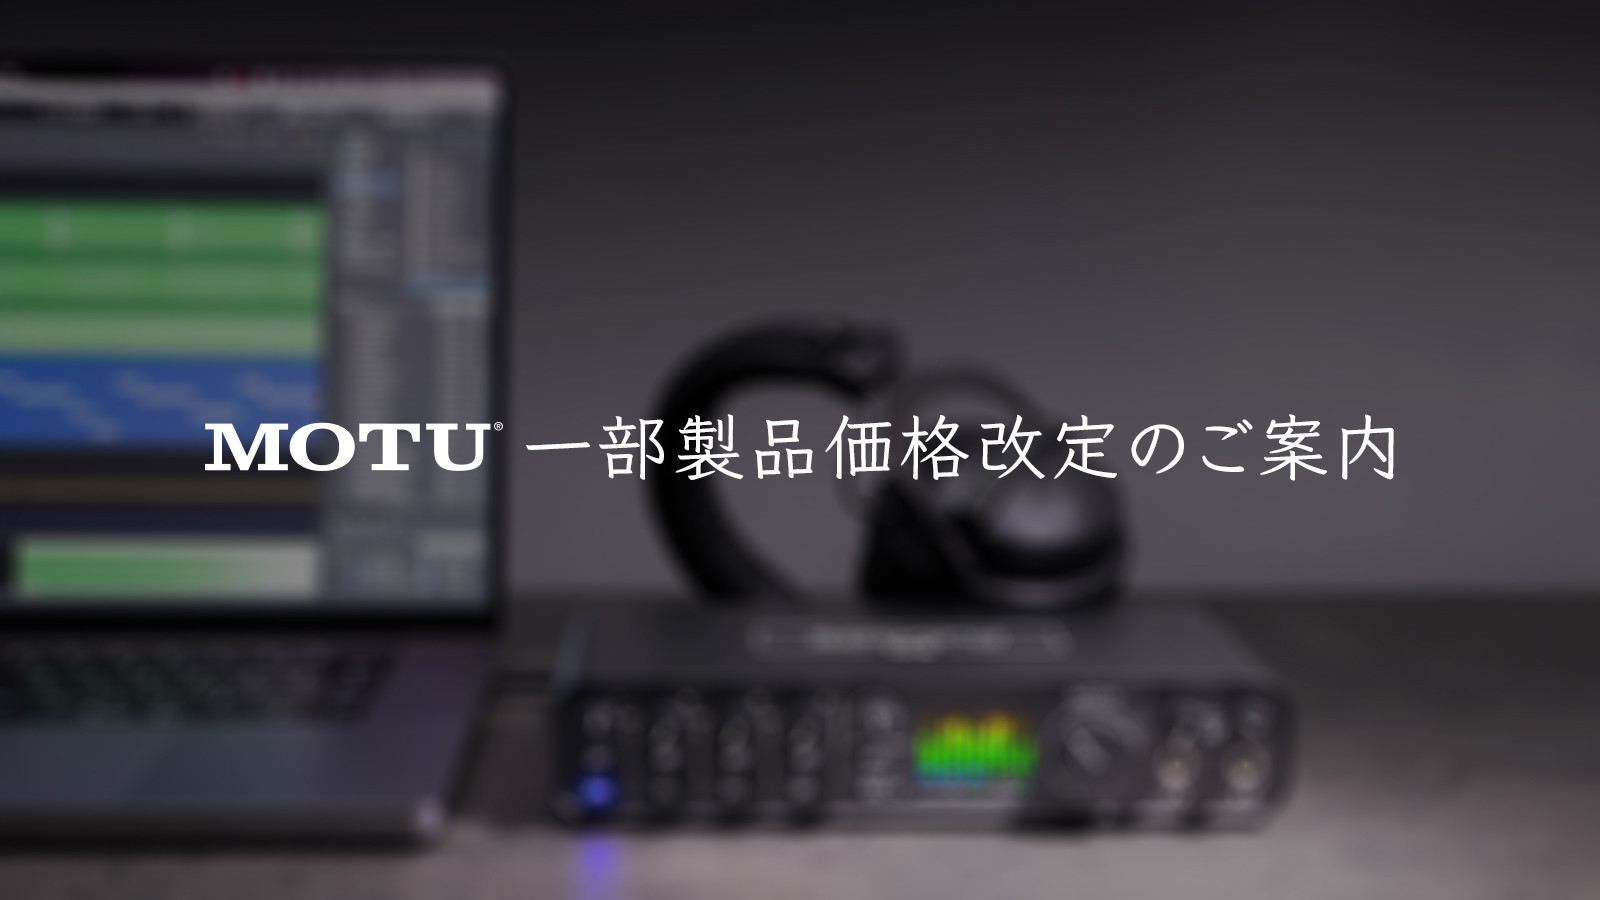 MOTU | 株式会社ハイ・リゾリューション